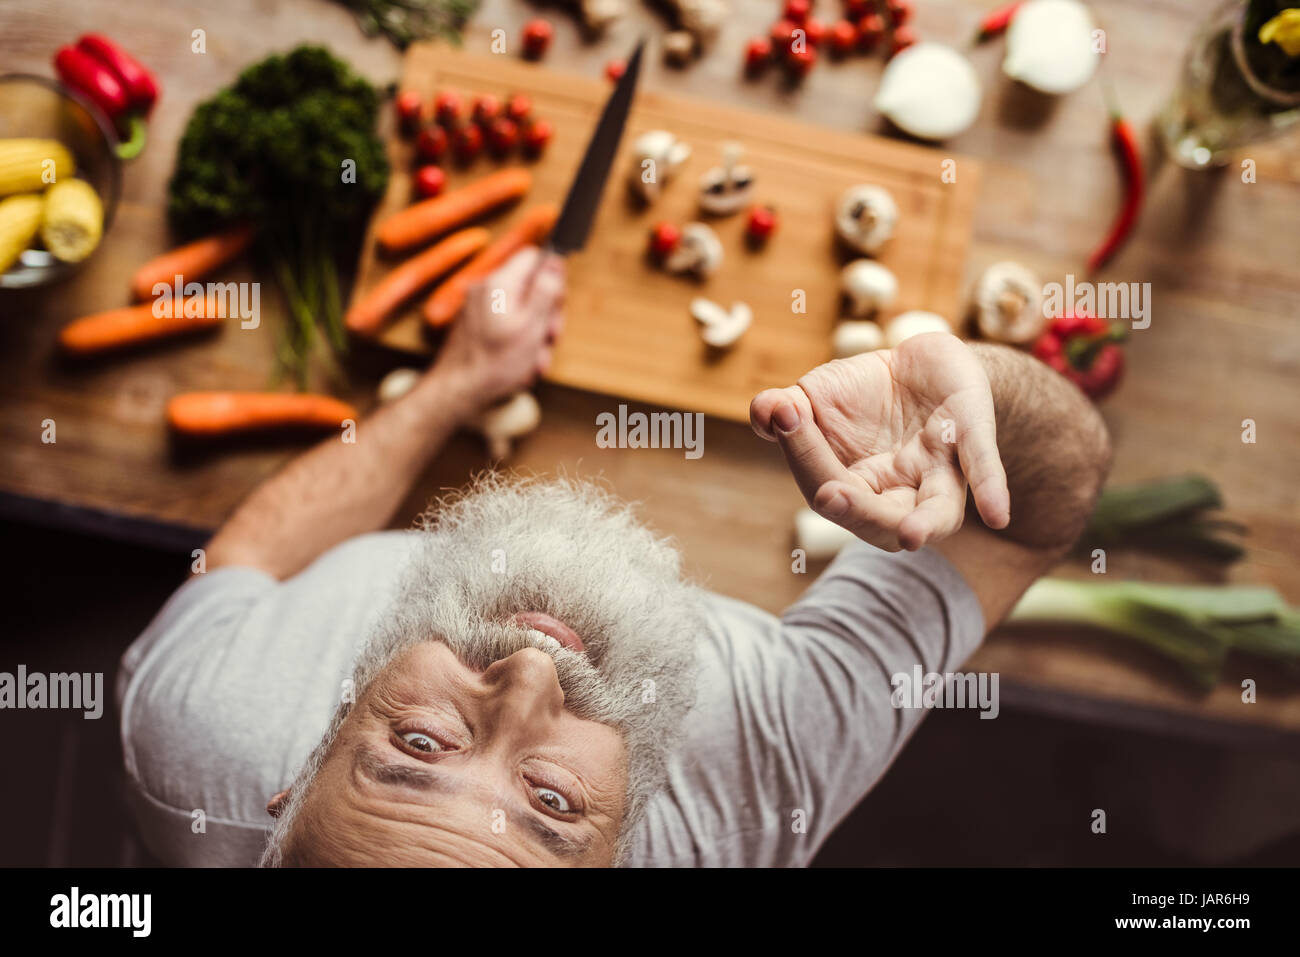 Man preparing vegan food  Stock Photo